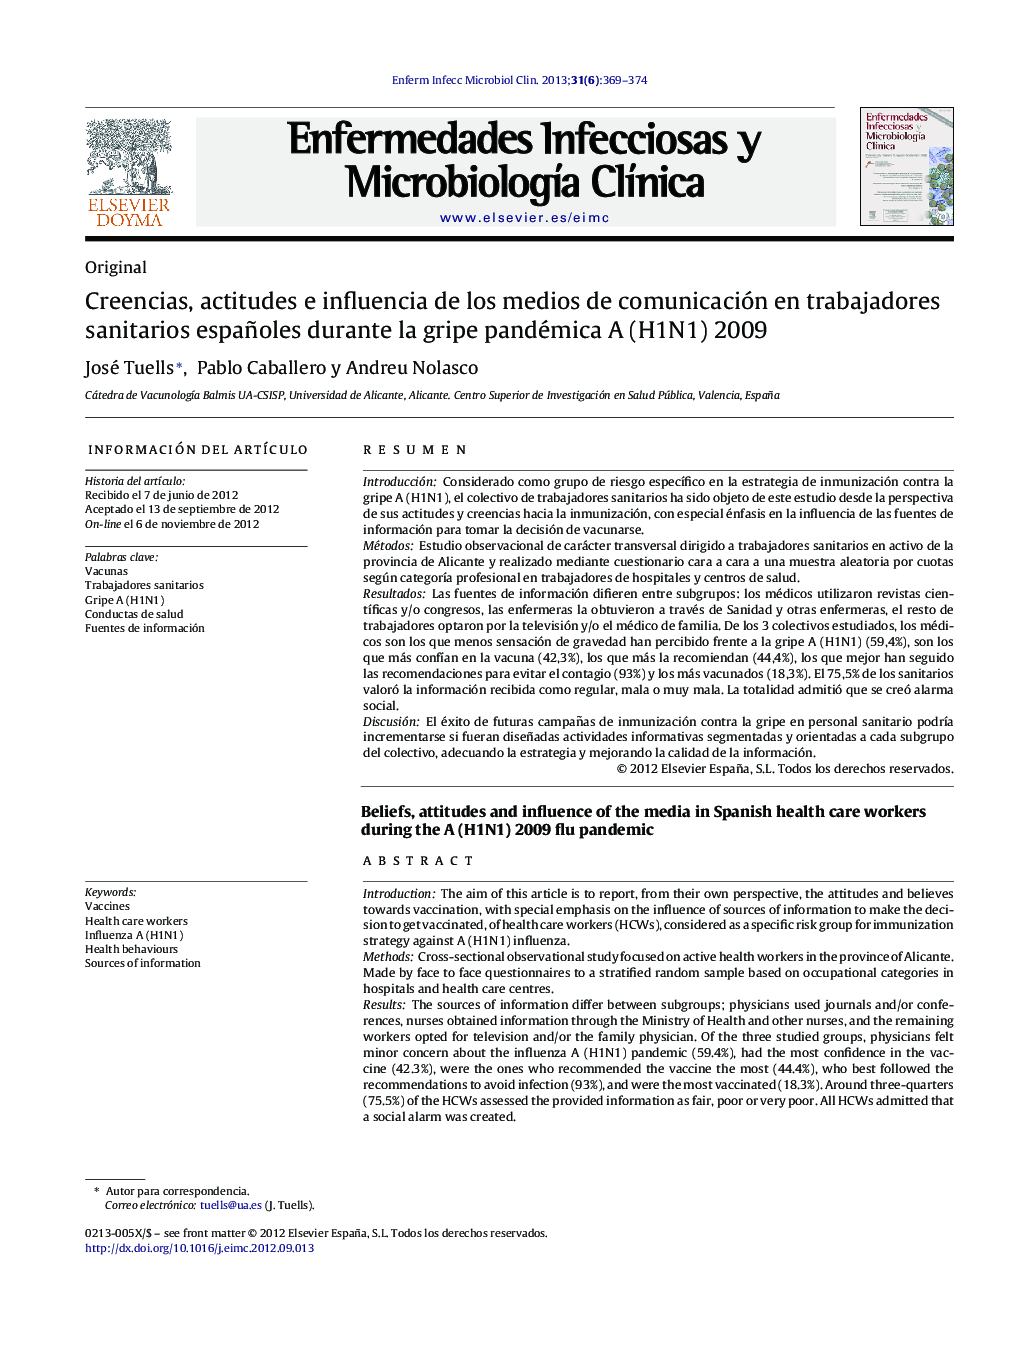 Creencias, actitudes e influencia de los medios de comunicación en trabajadores sanitarios españoles durante la gripe pandémica A (H1N1) 2009